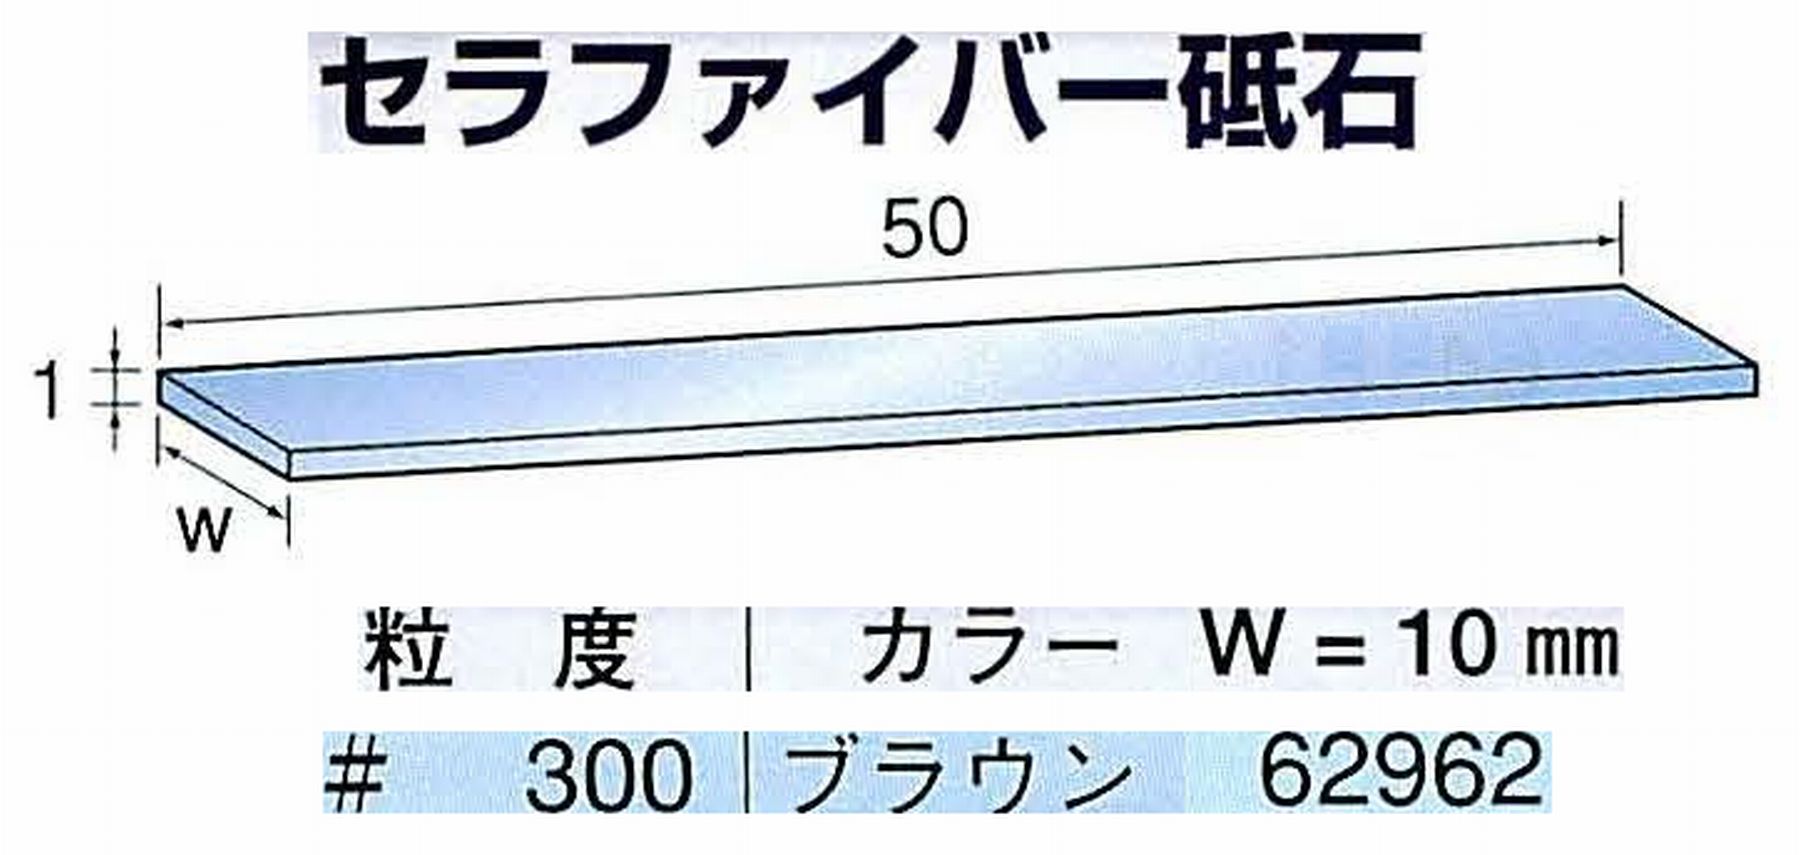 ナカニシ/NAKANISHI ペンシルタイプ 電動・エアーヤスリ(左右動) スイングラスター専用工具 セラファイバー砥石 62962